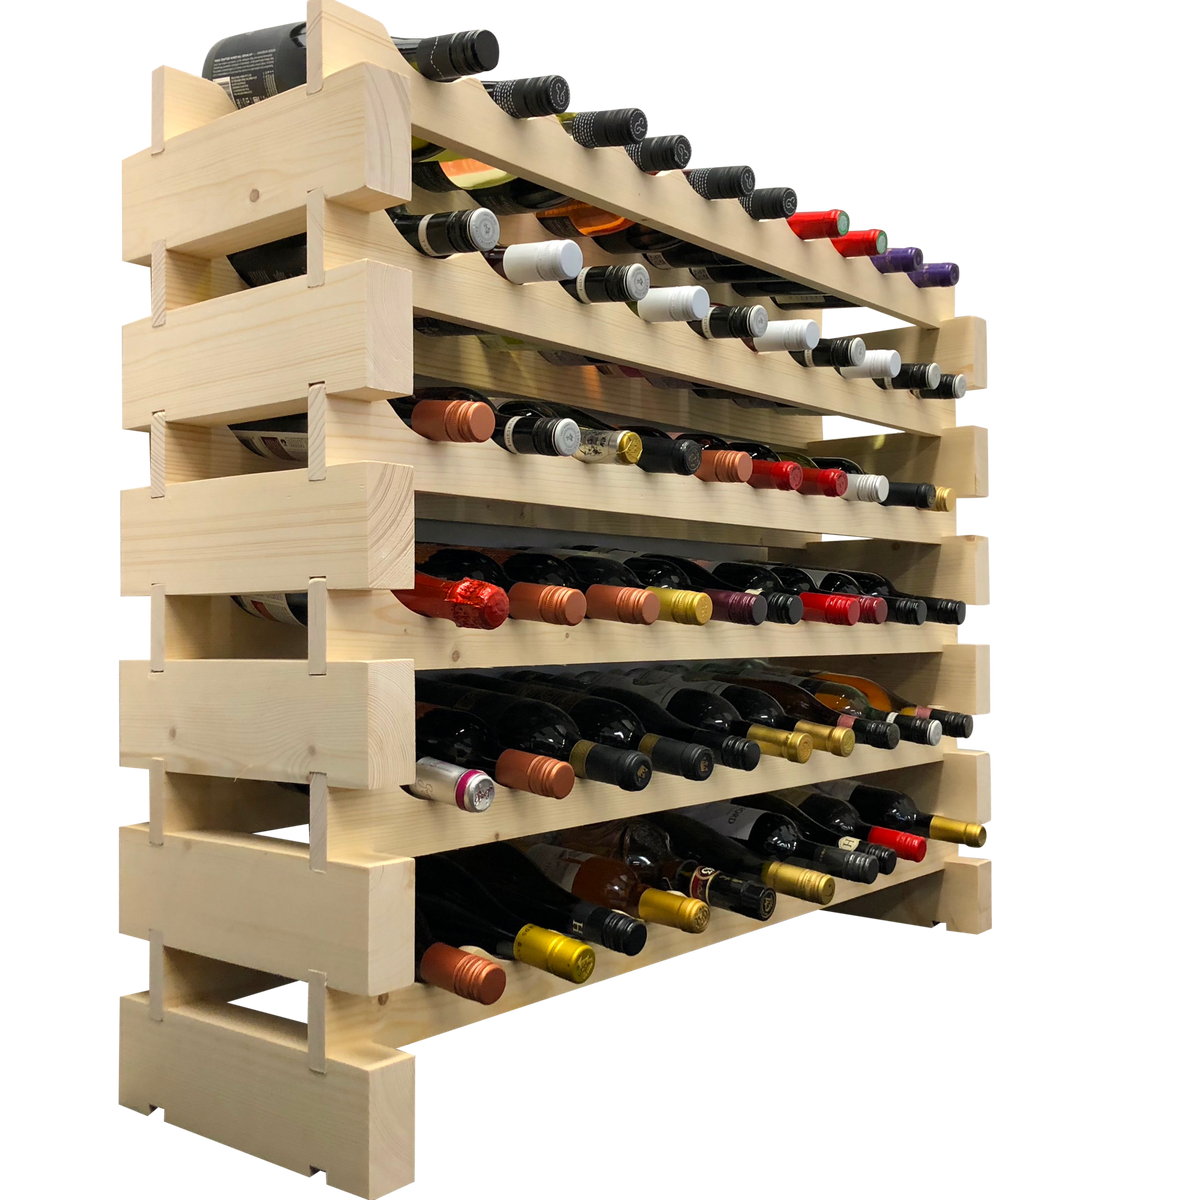 60 Bottle Modular Wine Rack Kit (10 Bottles Wide X 6 Bottles High) - Wine Stash USA